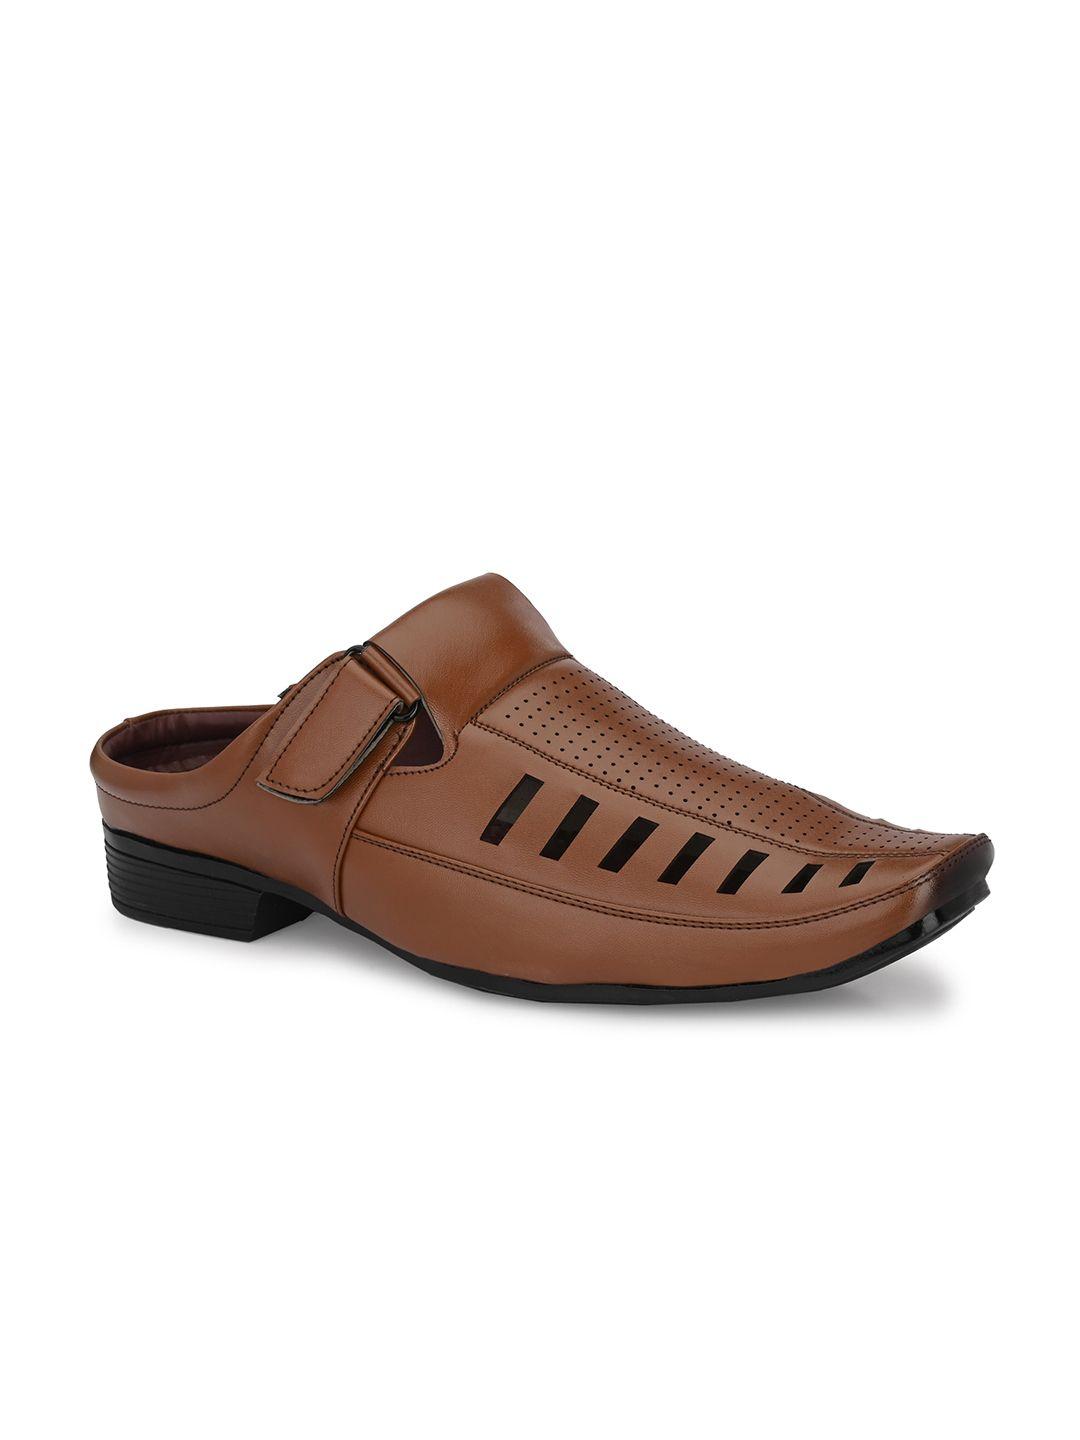 hundo p men tan brown perforations slip-on sneakers